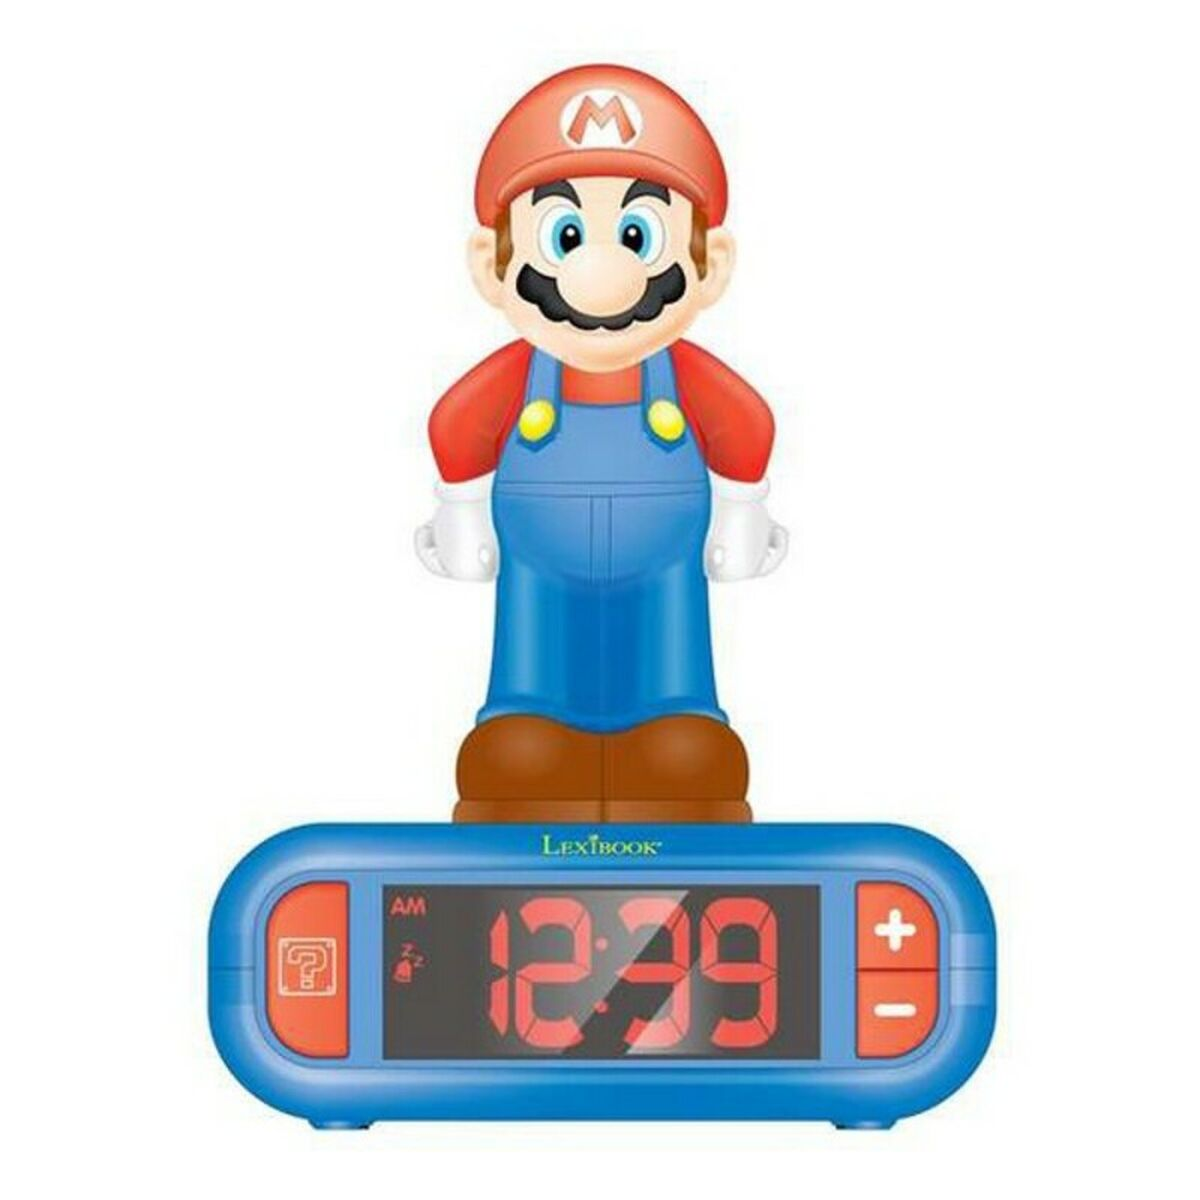 LEXIBOOK Super Mario 3D mit Nachtlicht Wecker